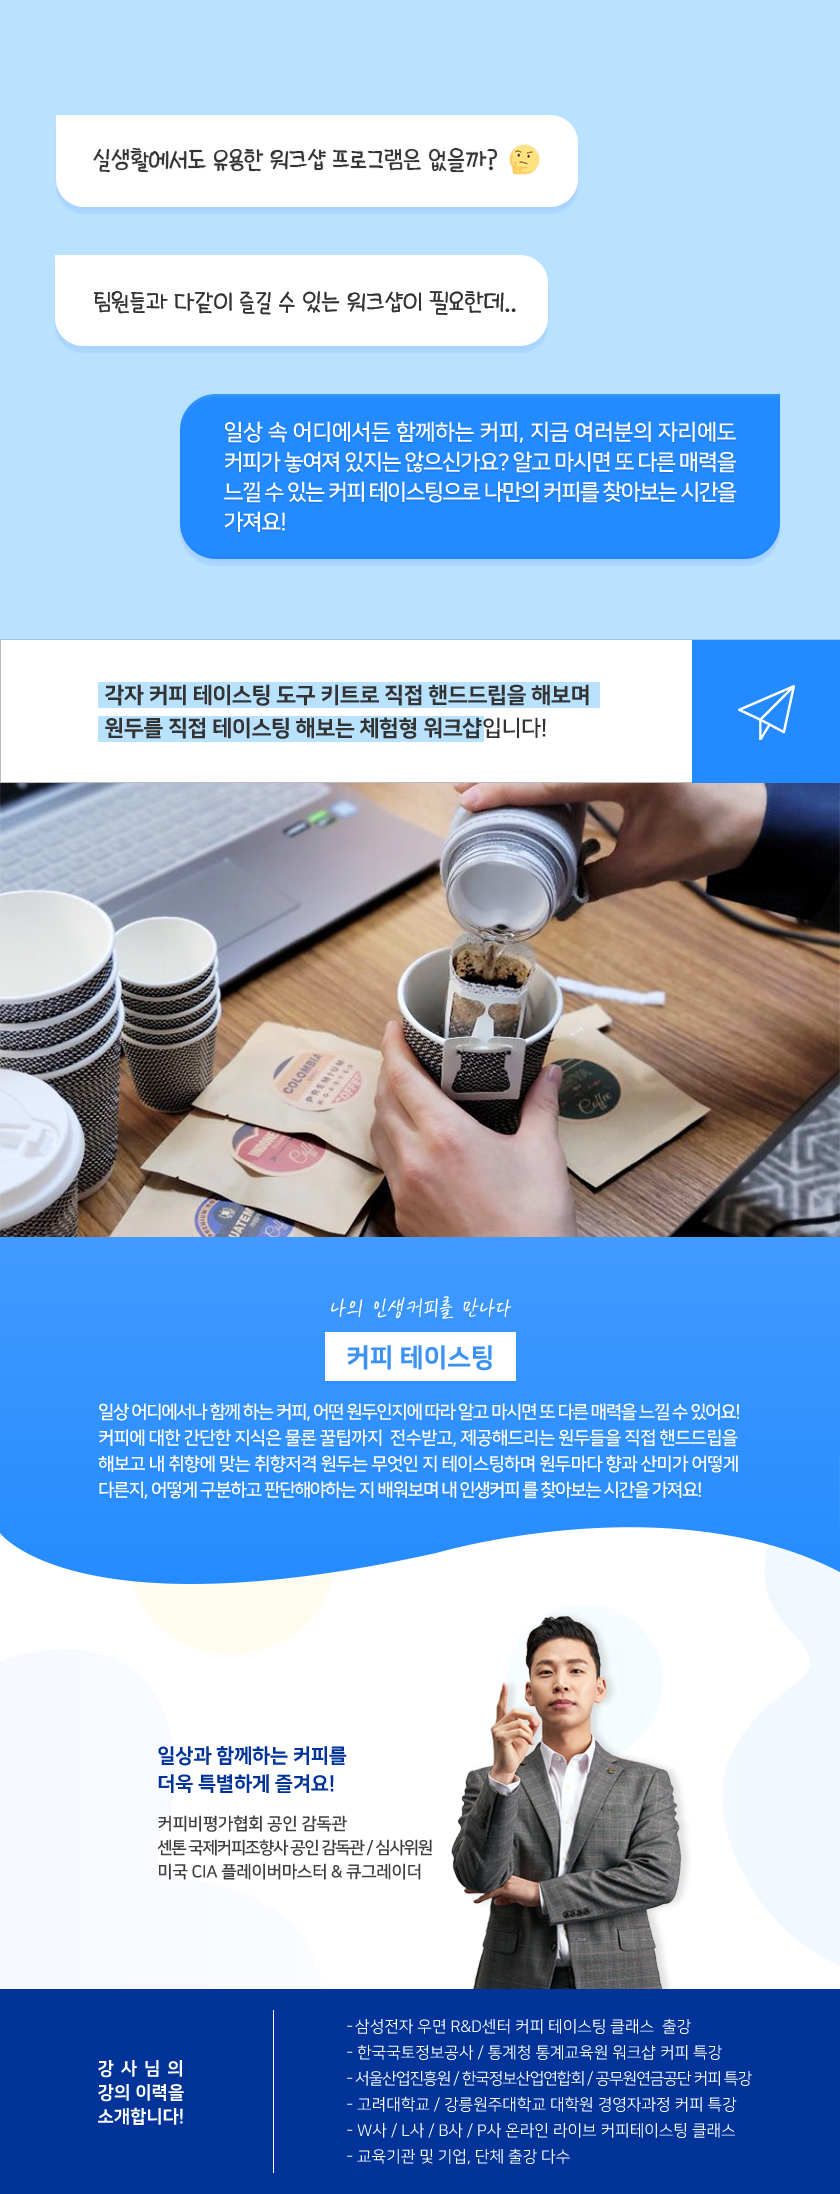 커피 테이스팅 LIVE 상세소개 | 이너트립